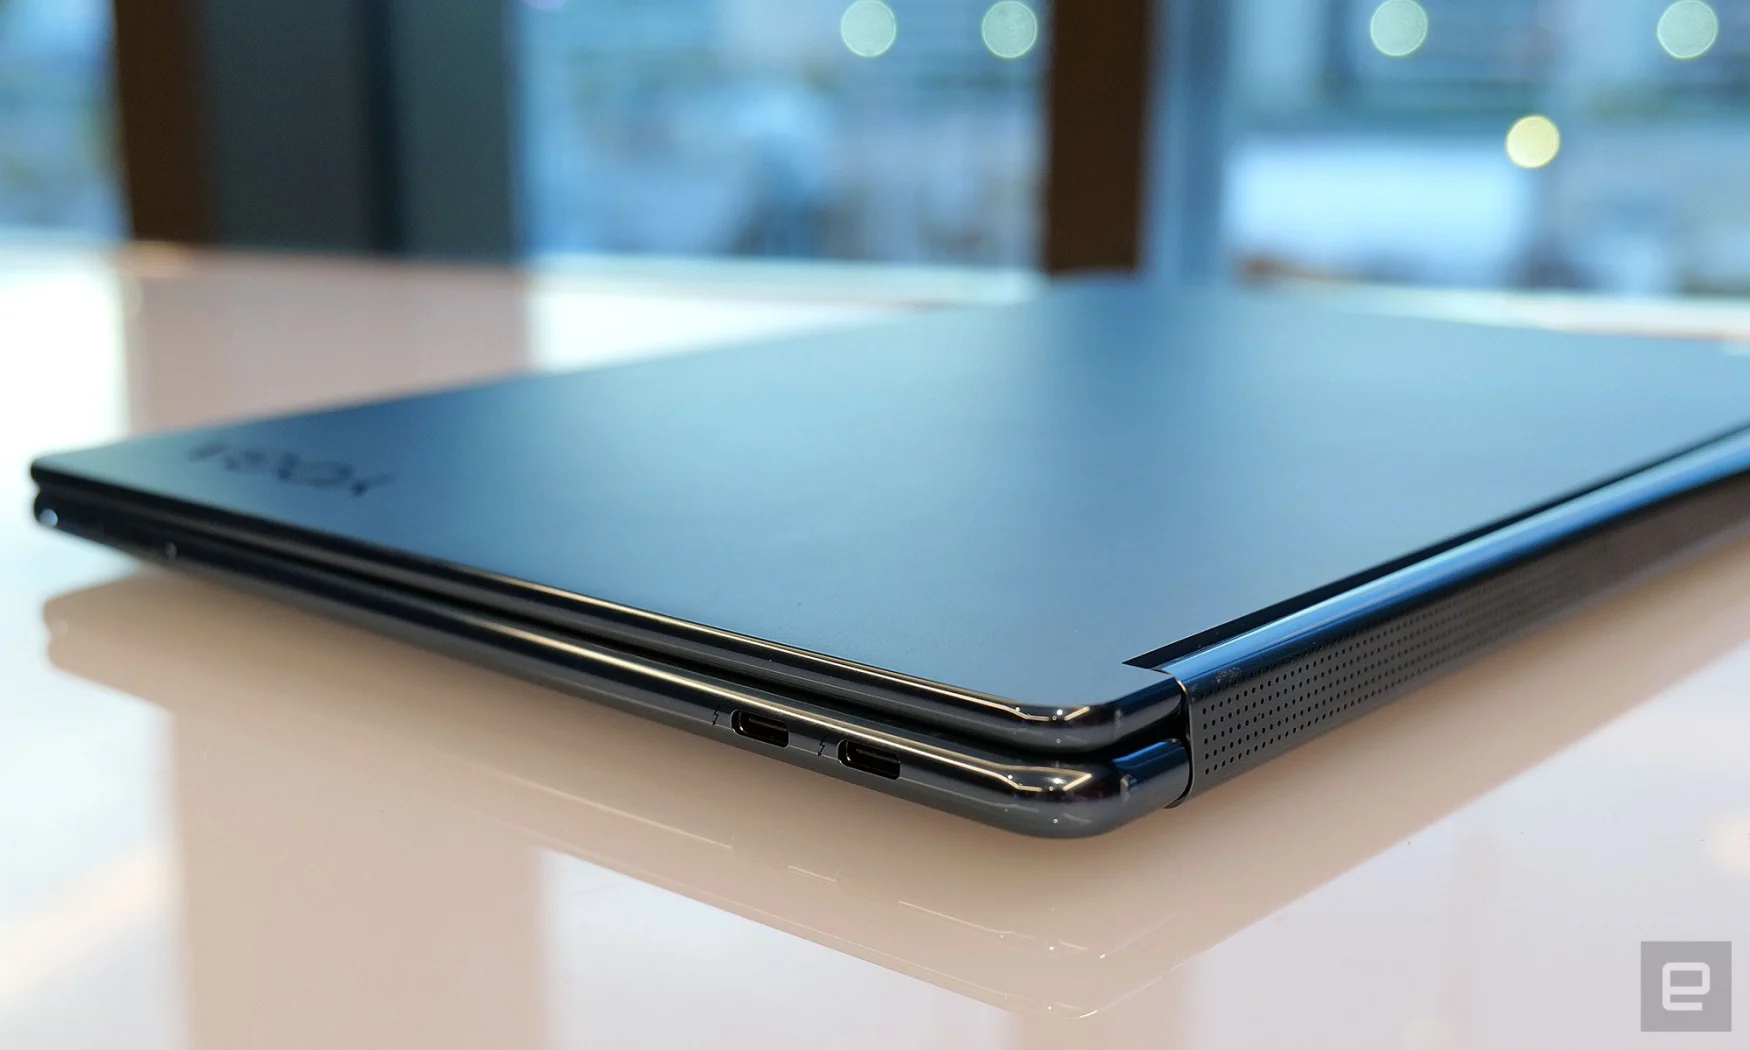 Çift ekranlarına ve ince boyutlarına rağmen, YogaBook 9i hala Thunderbolt 4 ile üç USB-C bağlantı noktasına sahiptir. 